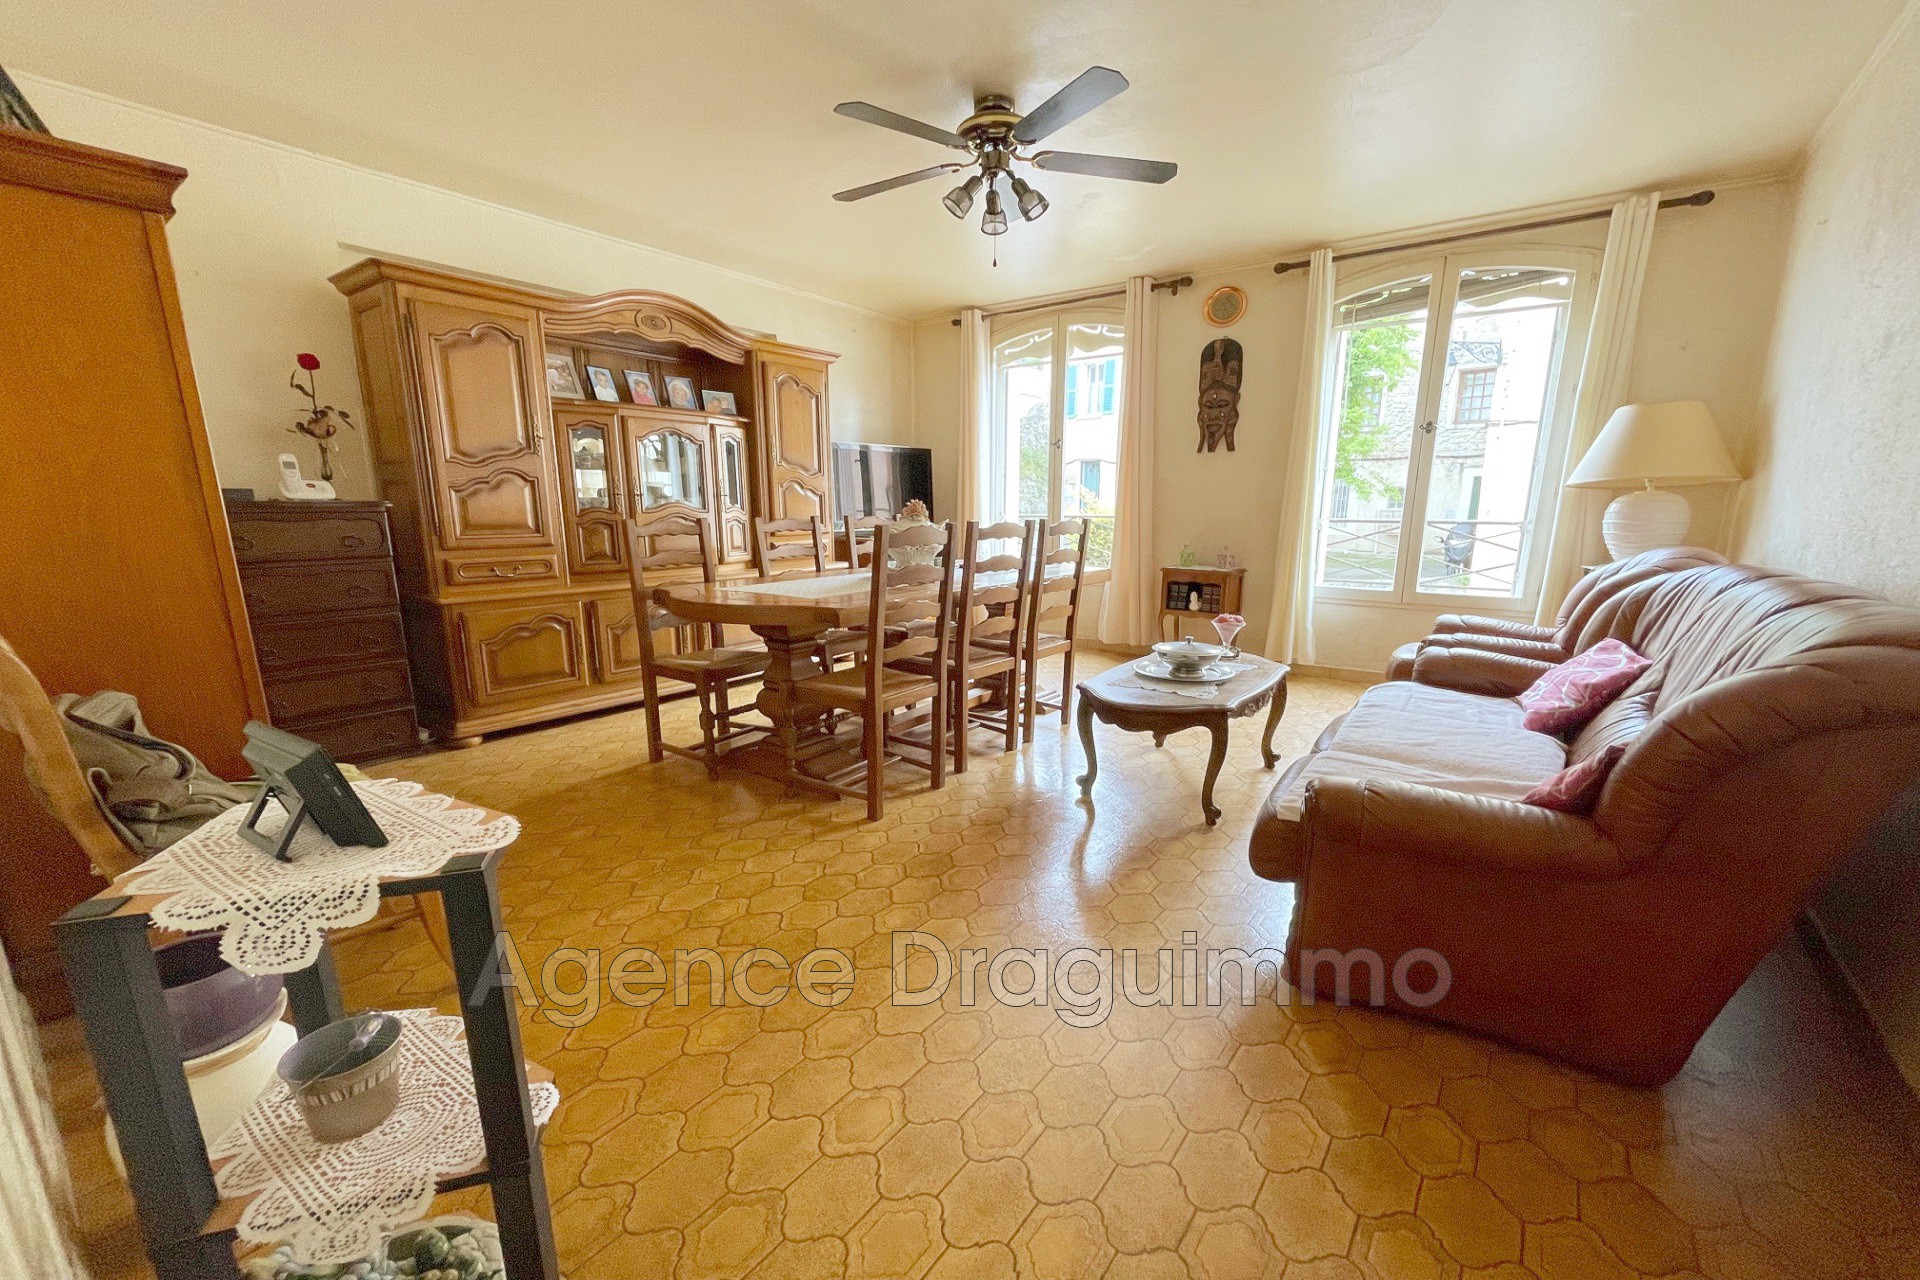 Vente Appartement 86m² 4 Pièces à Draguignan (83300) - Agence Draguimmo